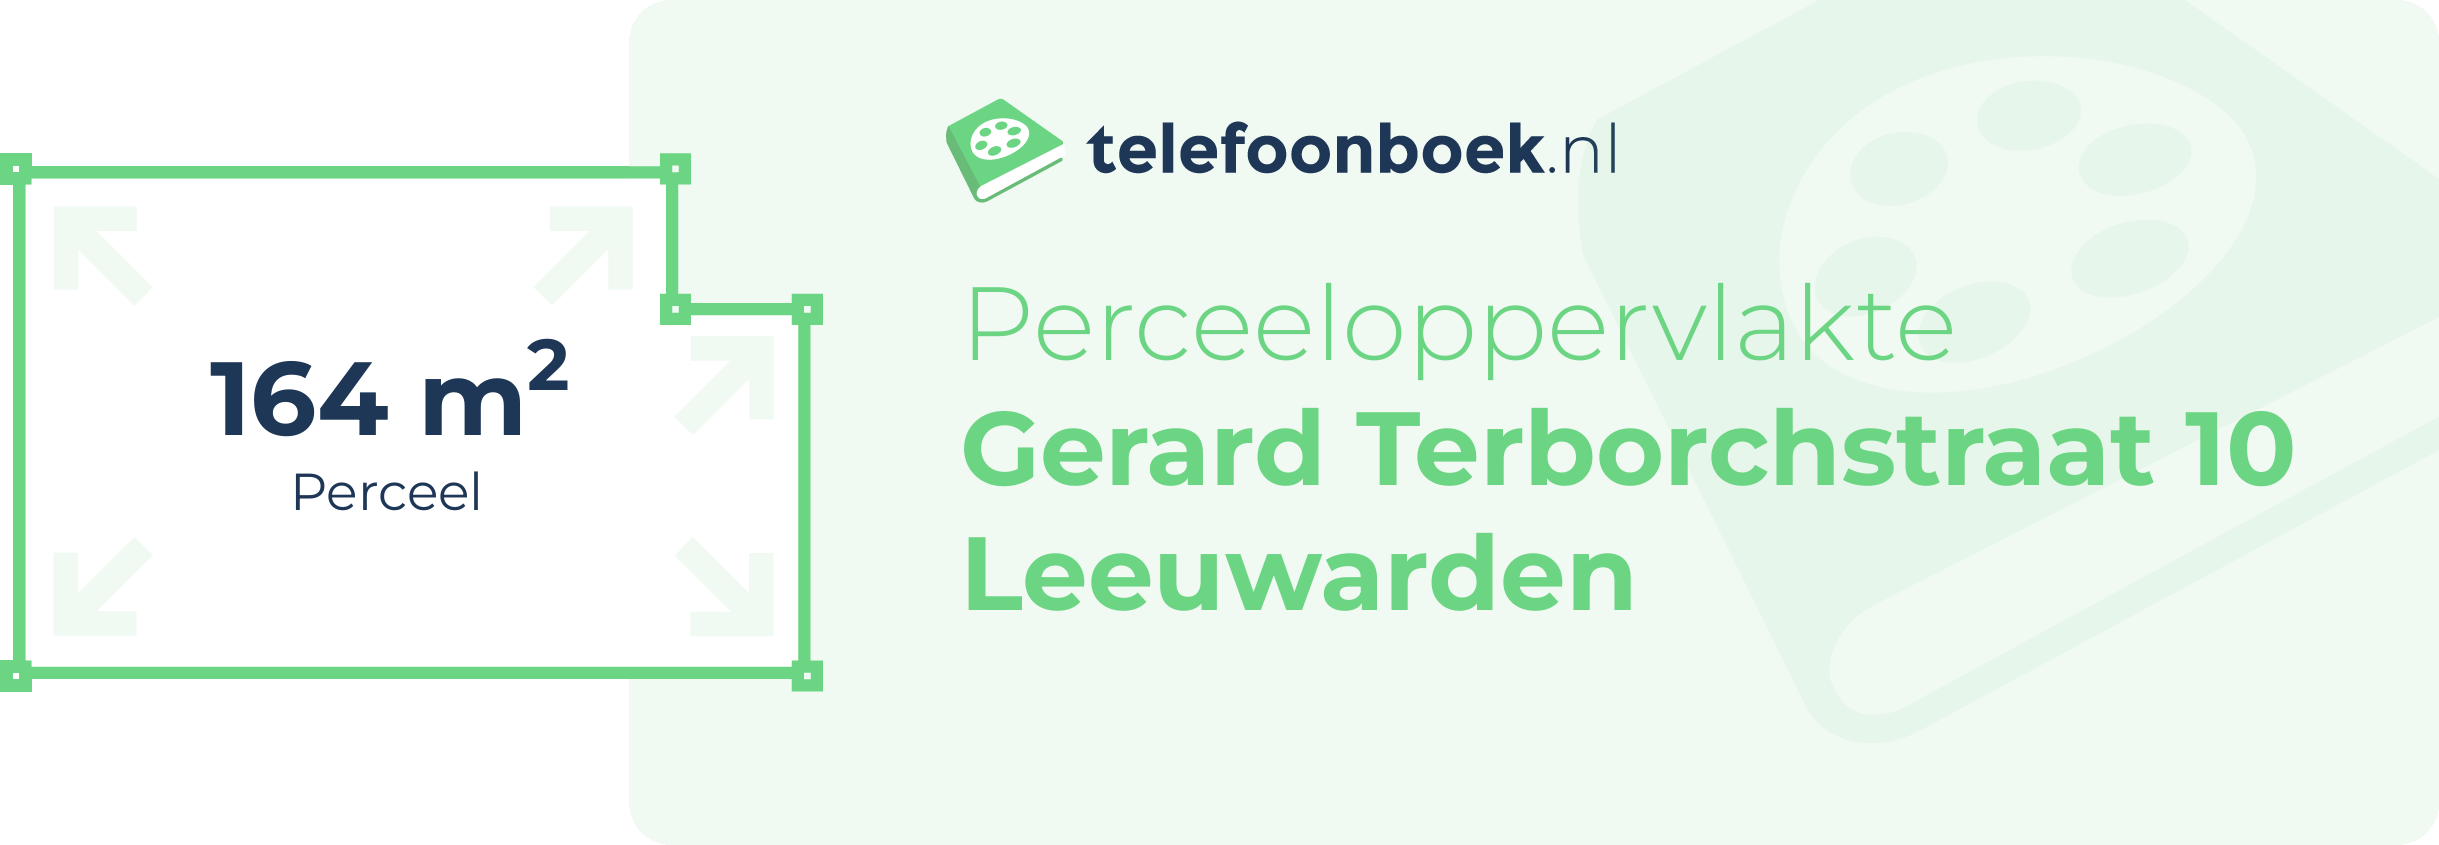 Perceeloppervlakte Gerard Terborchstraat 10 Leeuwarden